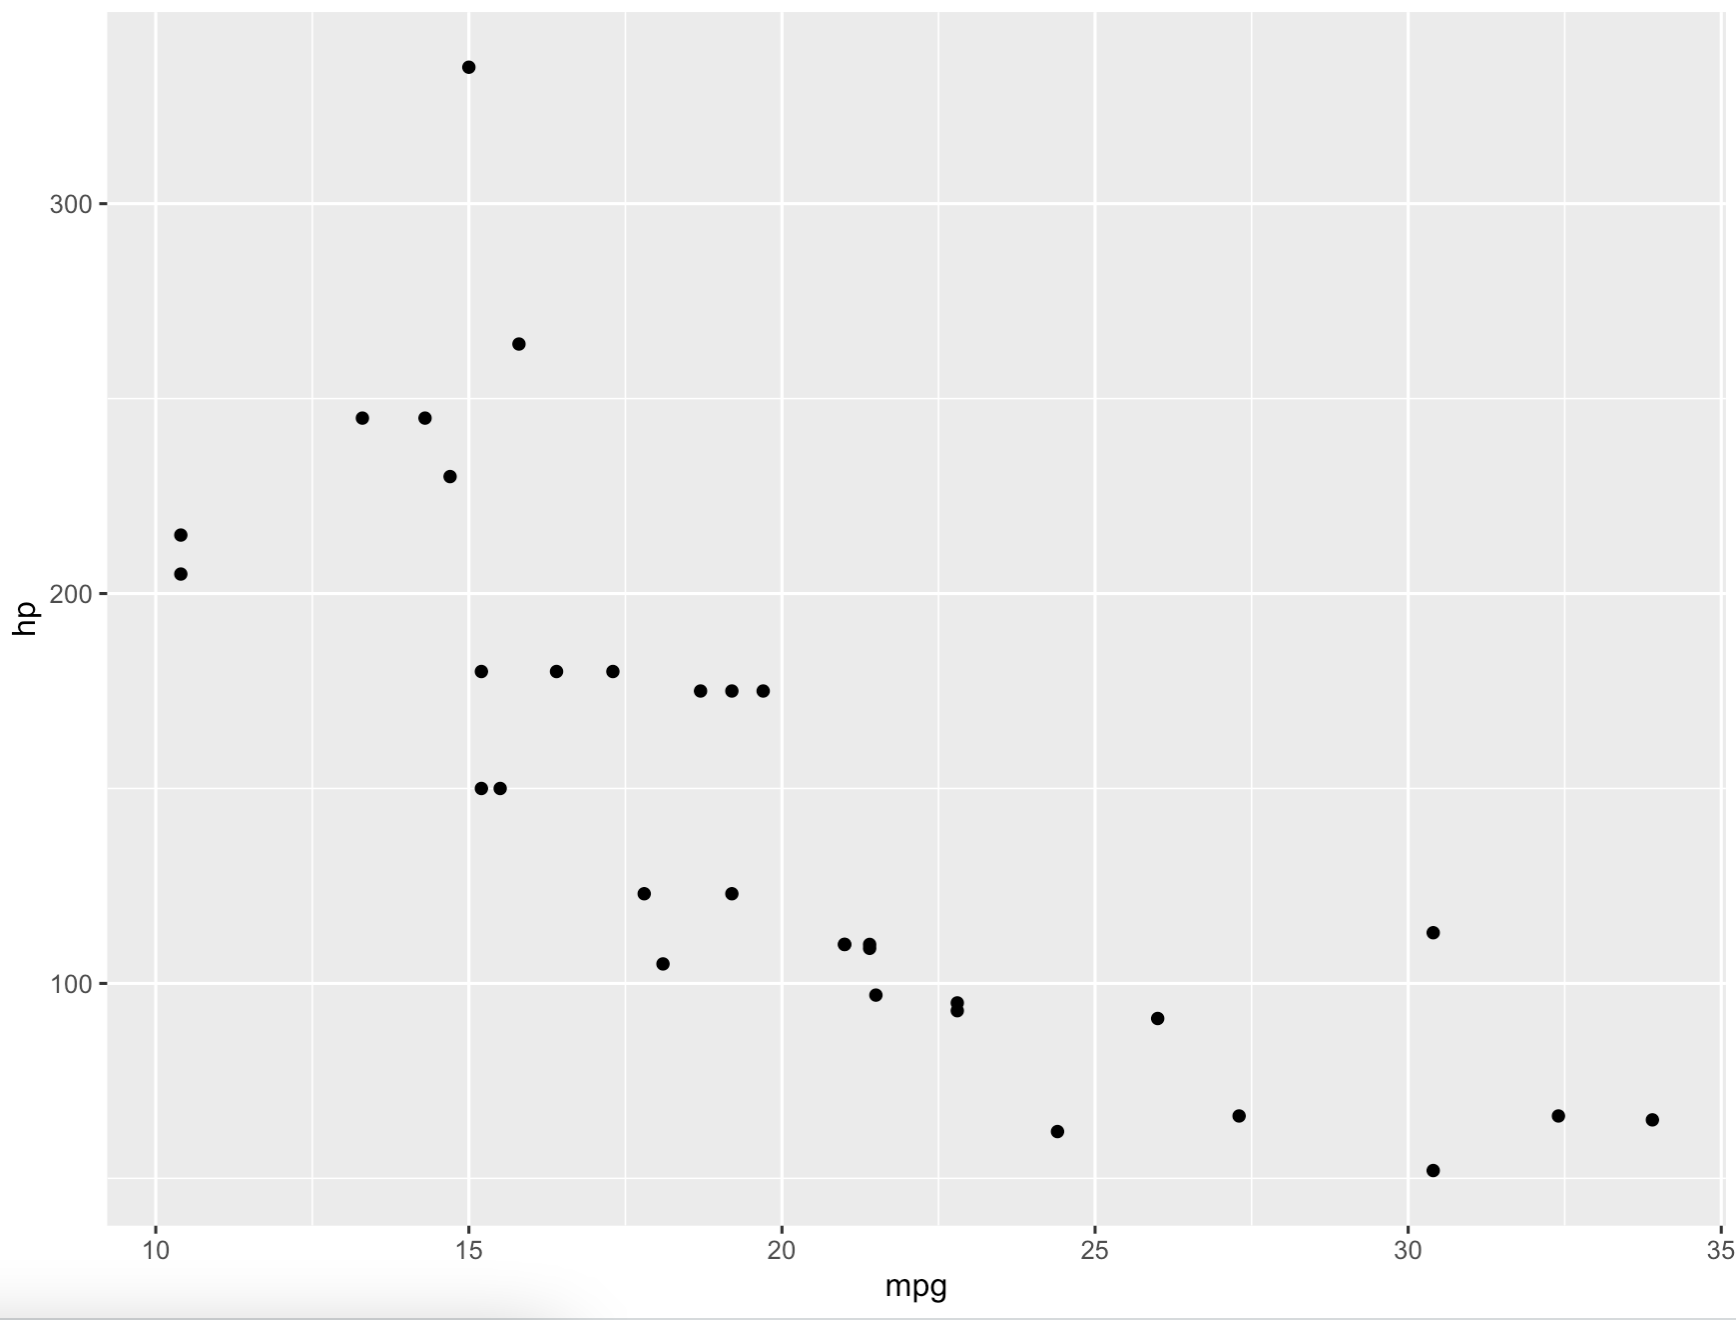 Image 1 - Basic ggplot scatter plot